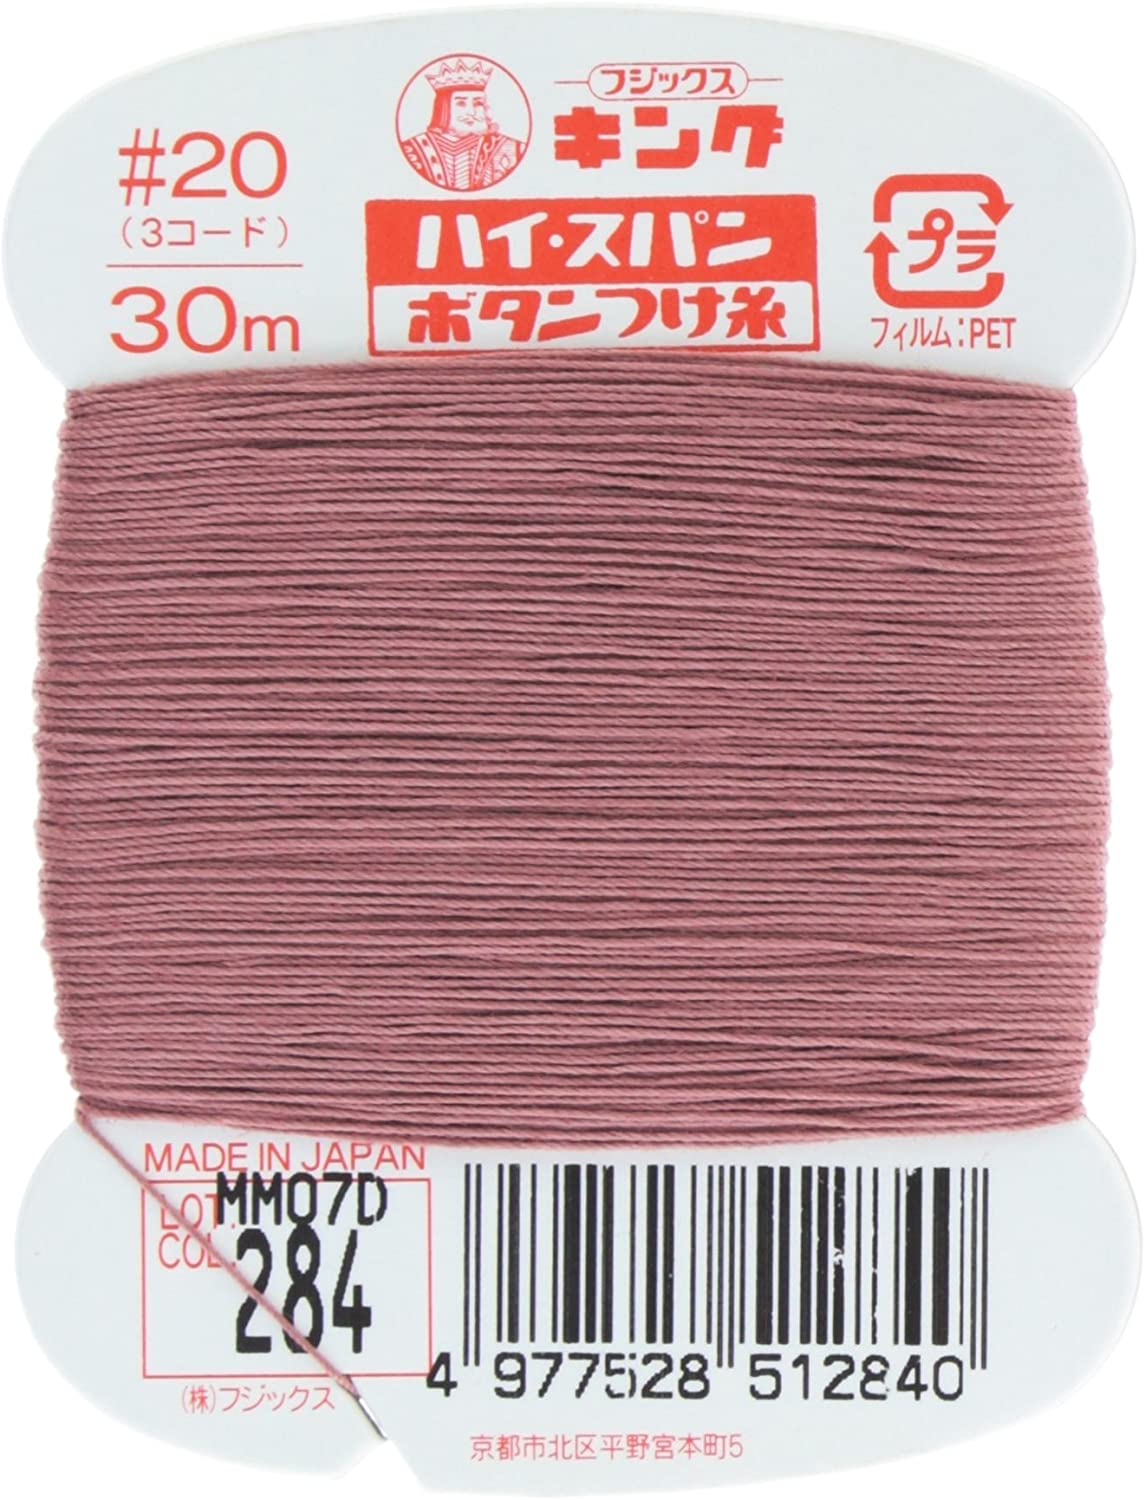 FK51-284 ハイスパンボタンつけ糸 #20 30m巻 (枚)